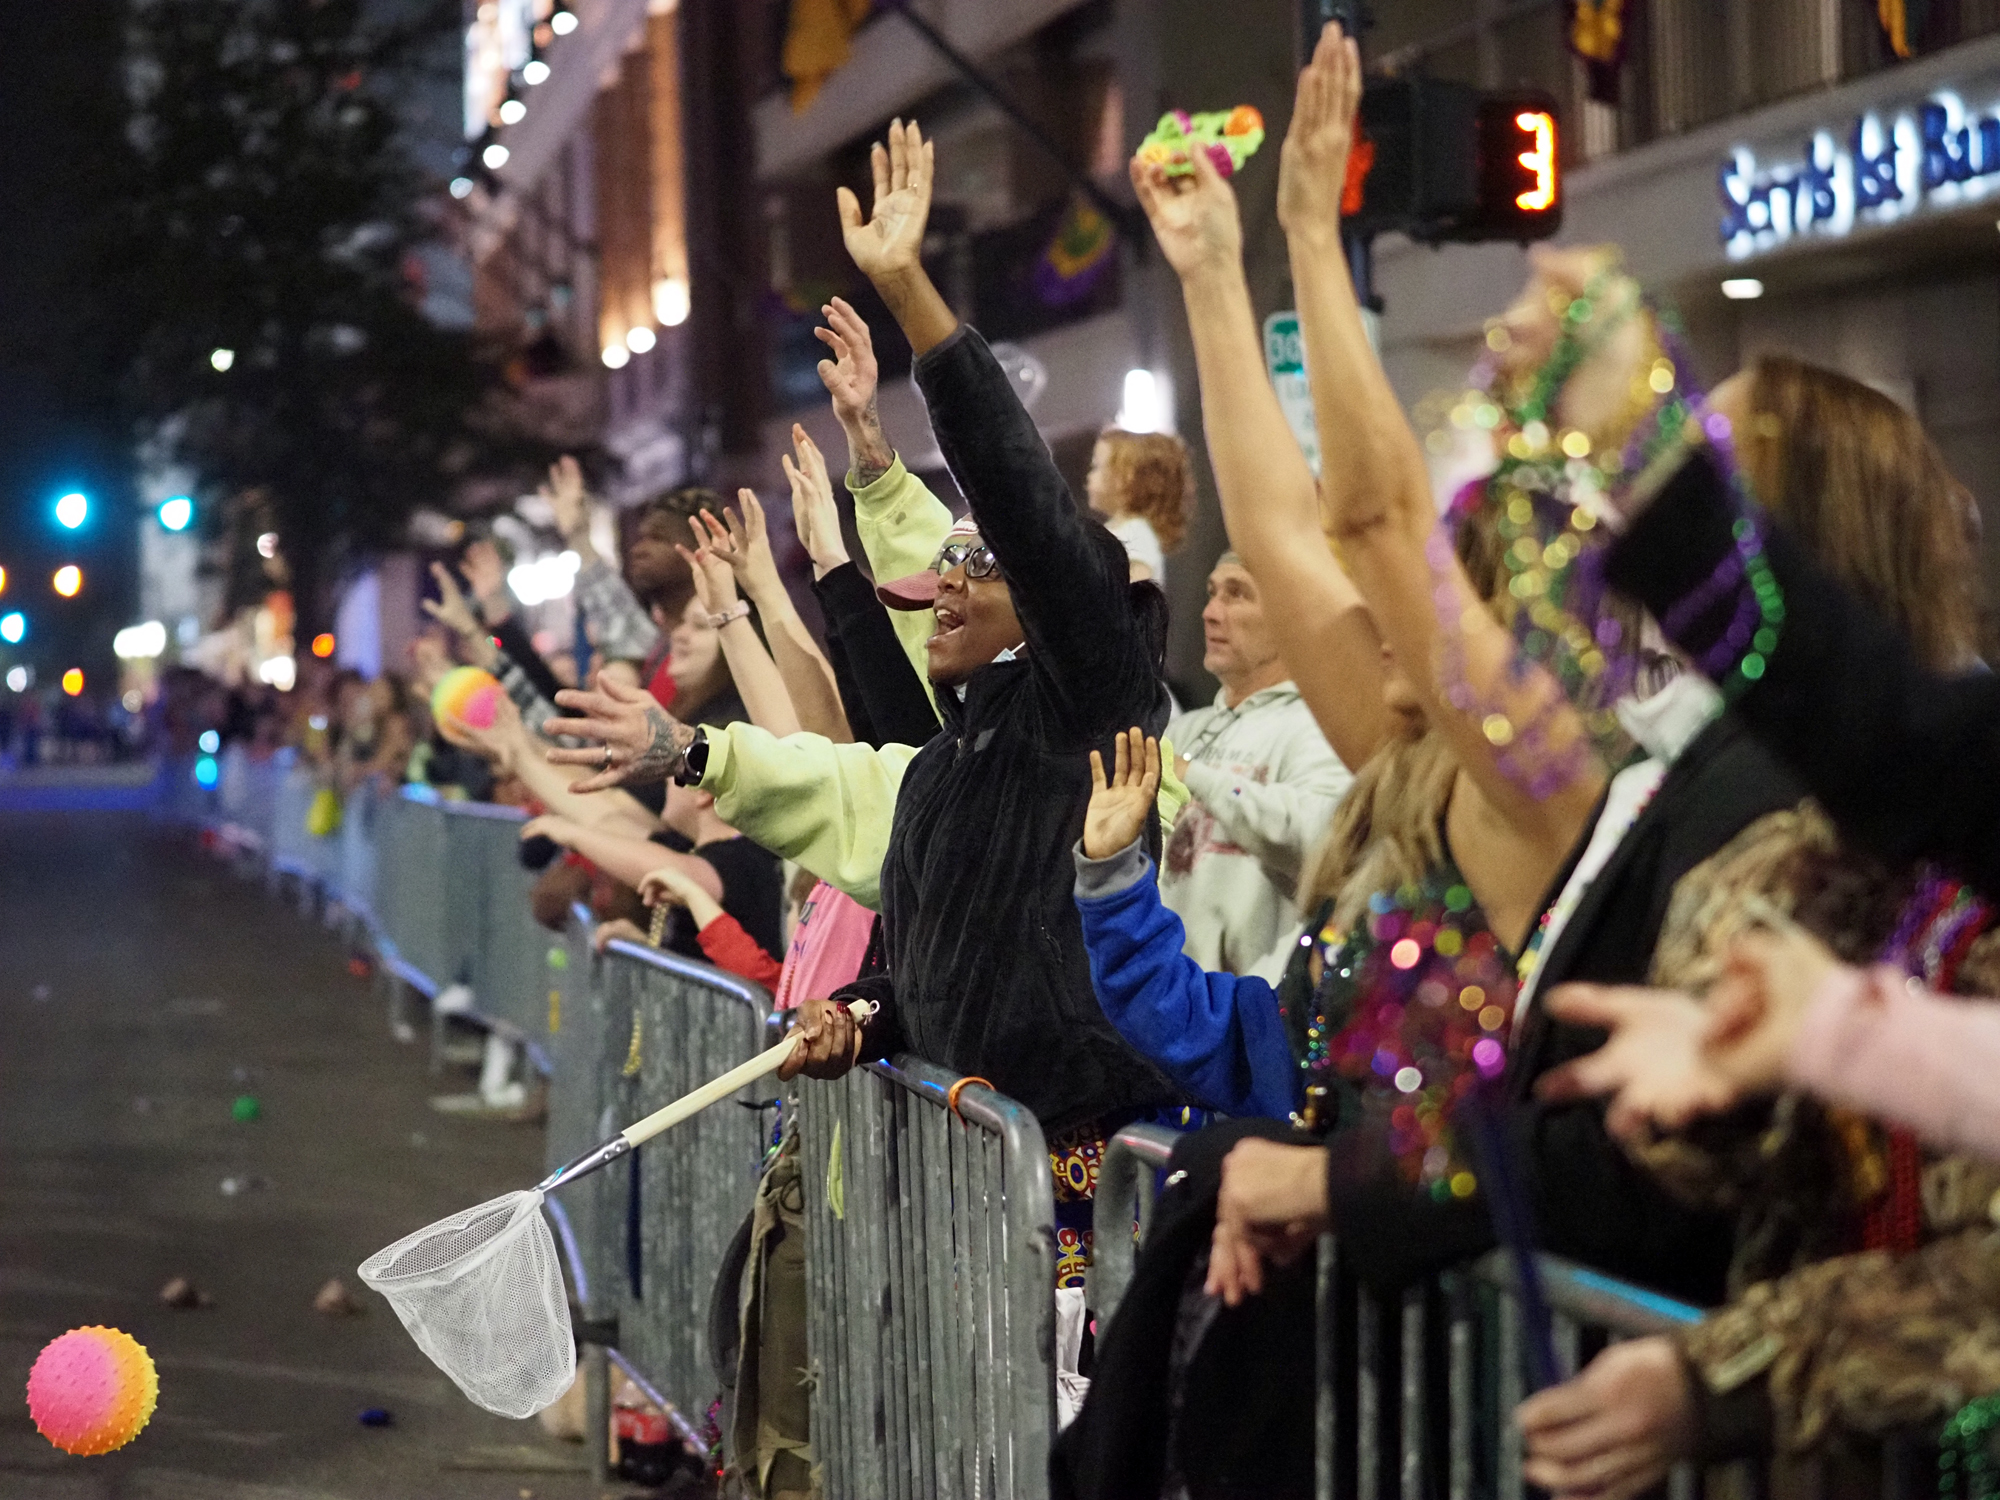 Three Alternatives to Toxic Mardi Gras Throws